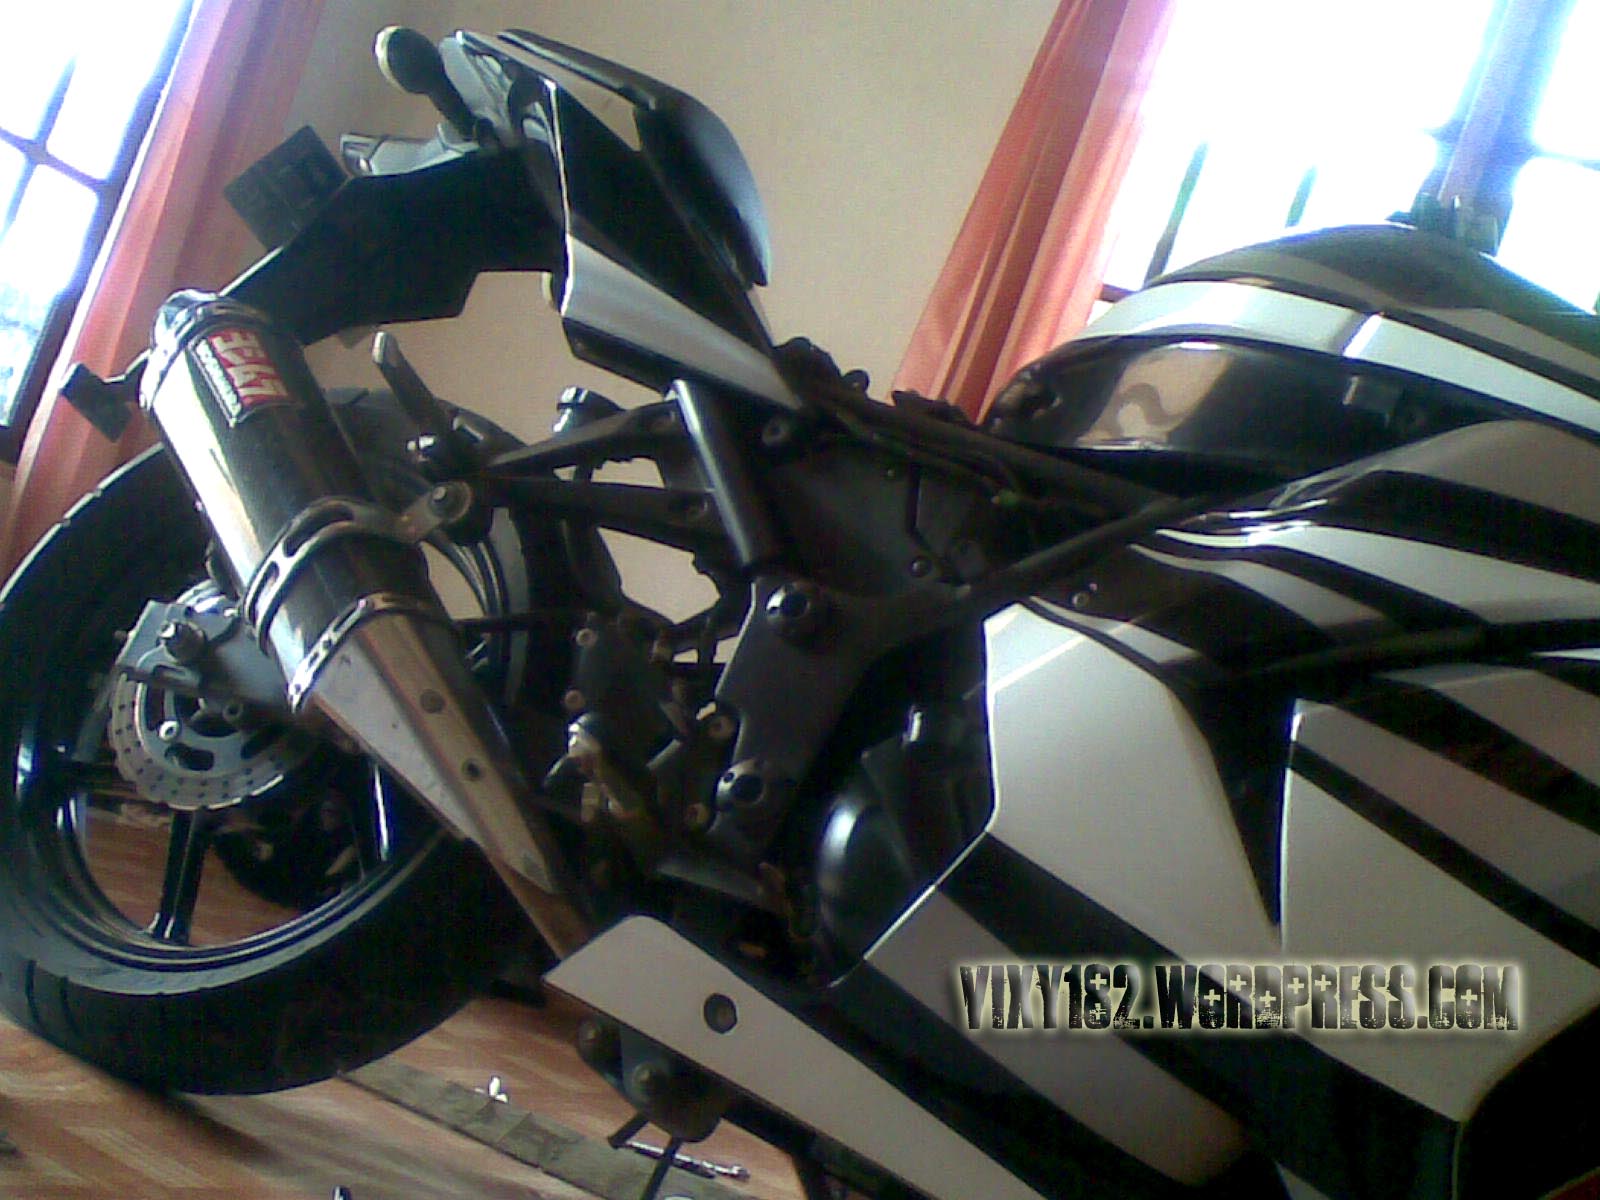  Tangki motor Old Ninja 250 Bocor bro Vixy182 s Blog